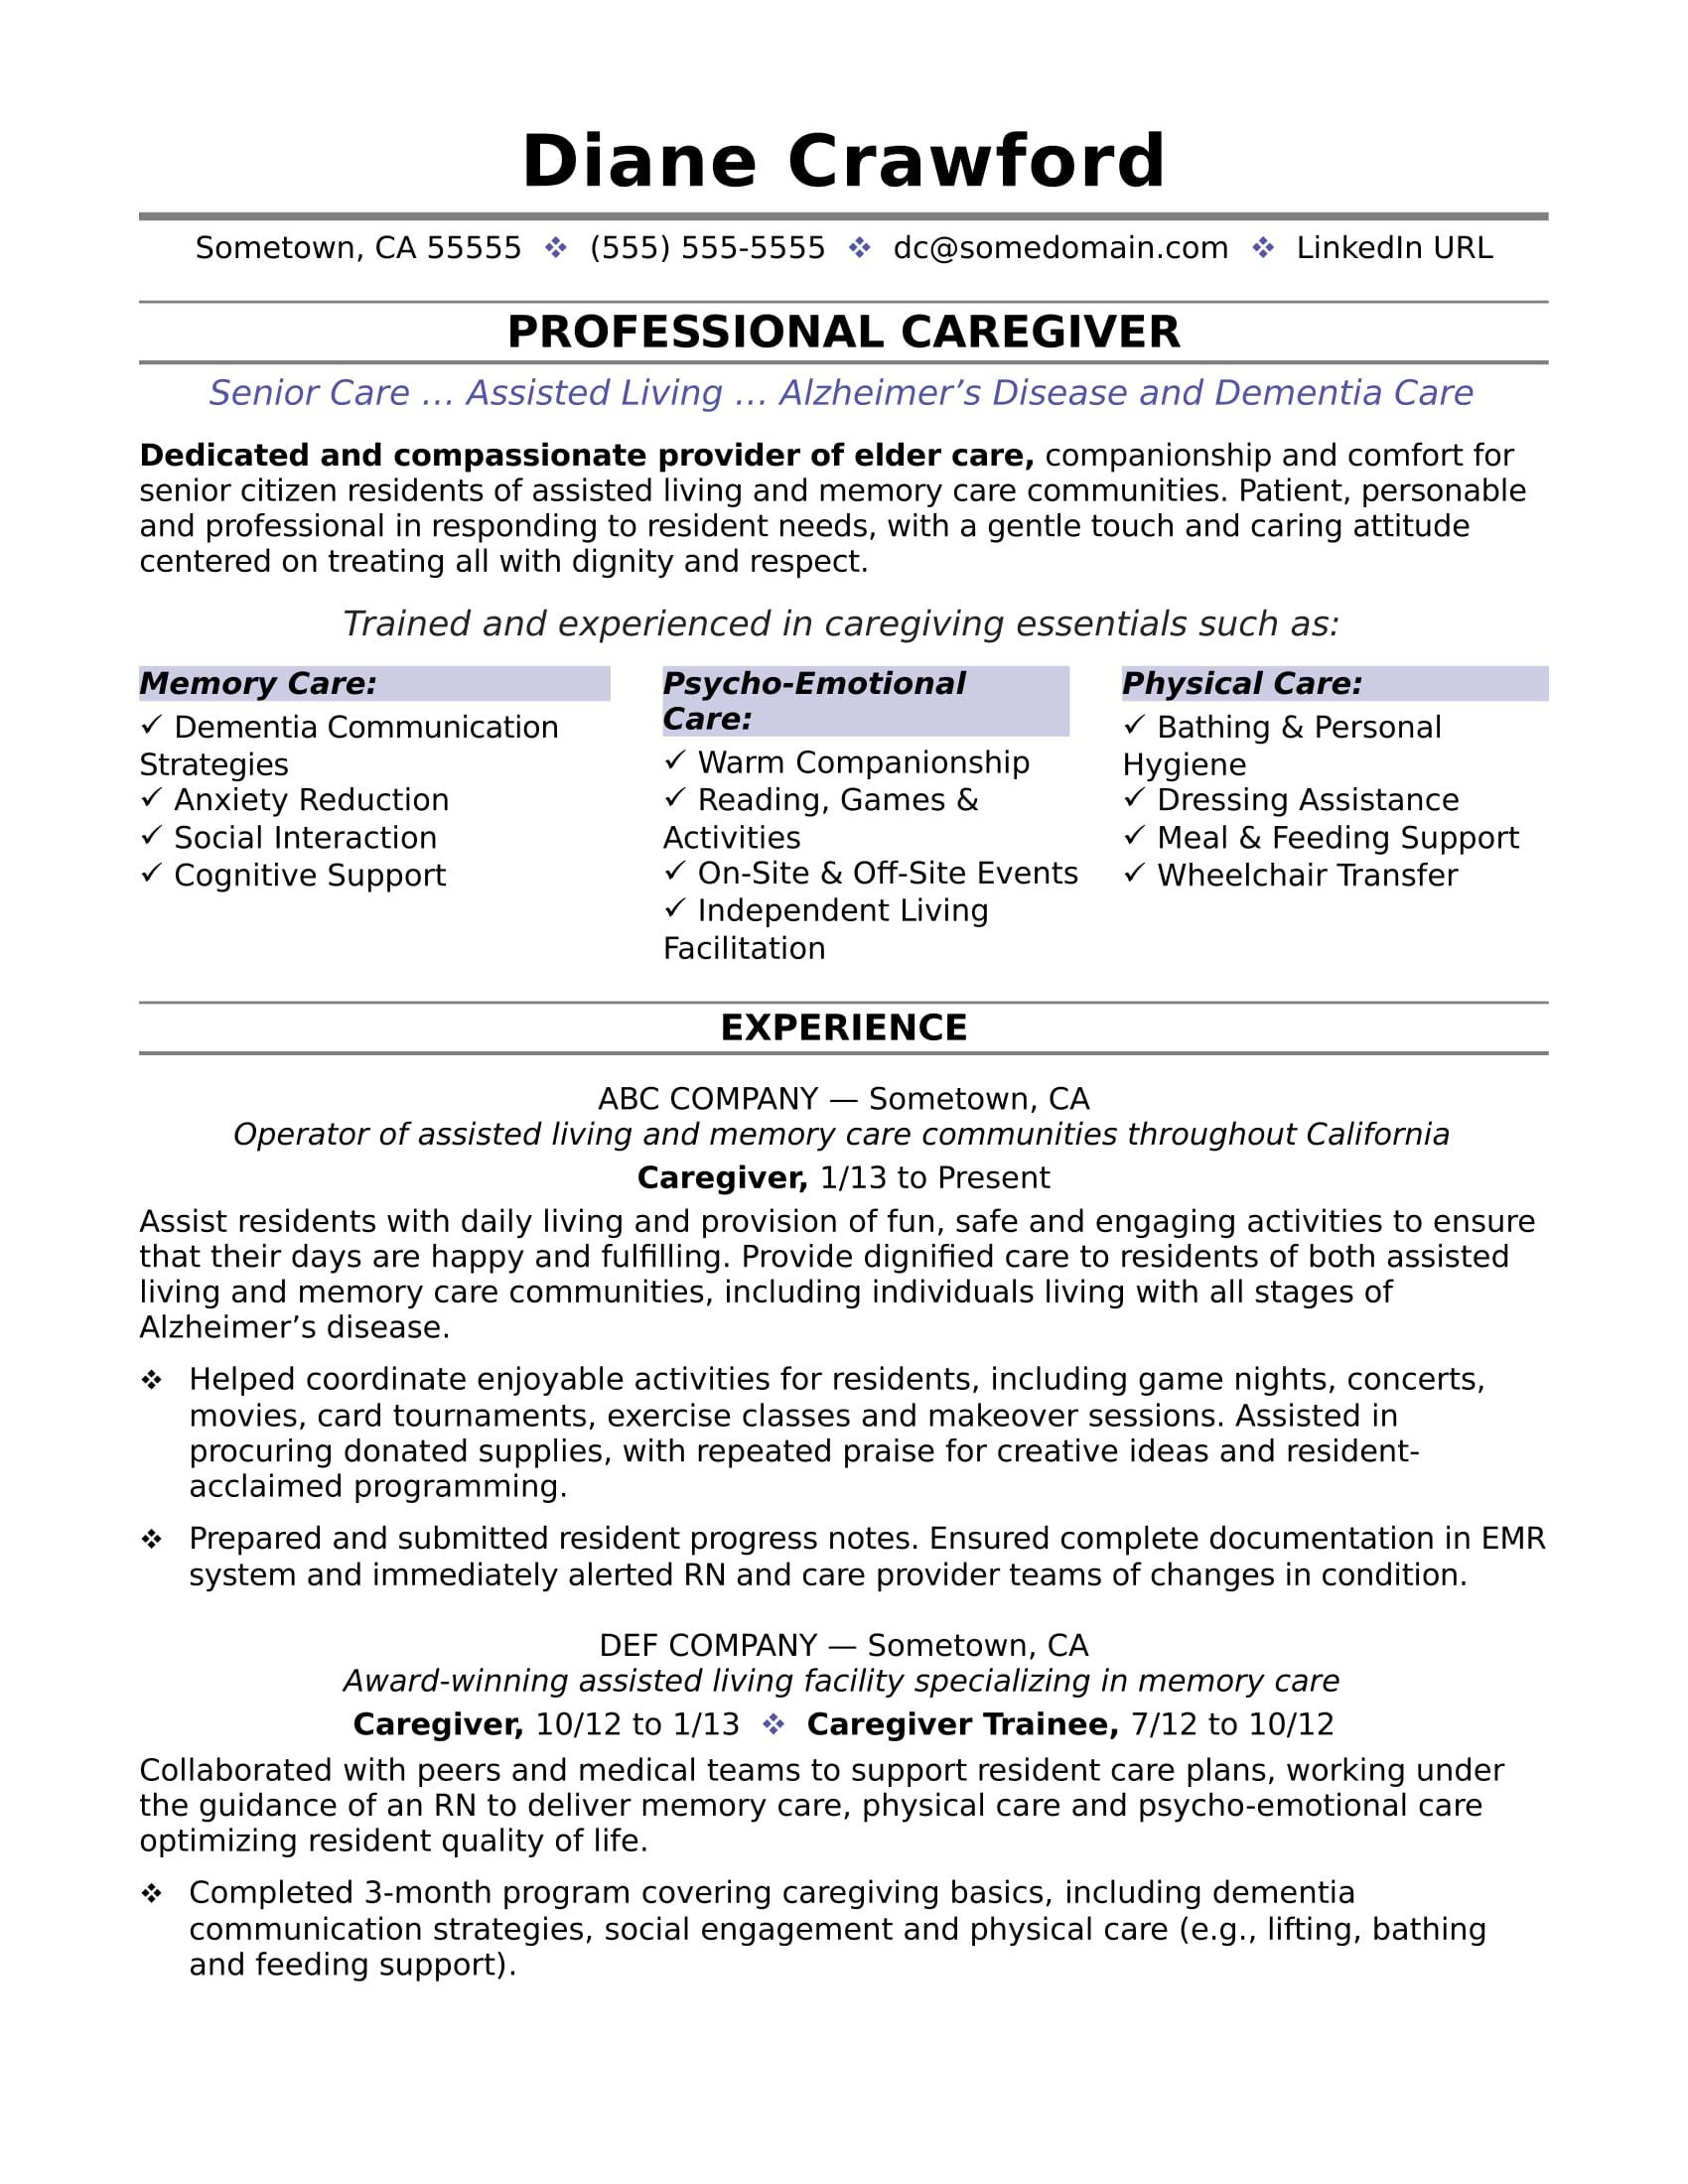 Resume Samples to Be A Caregiver Caregiver Resume Monster.com